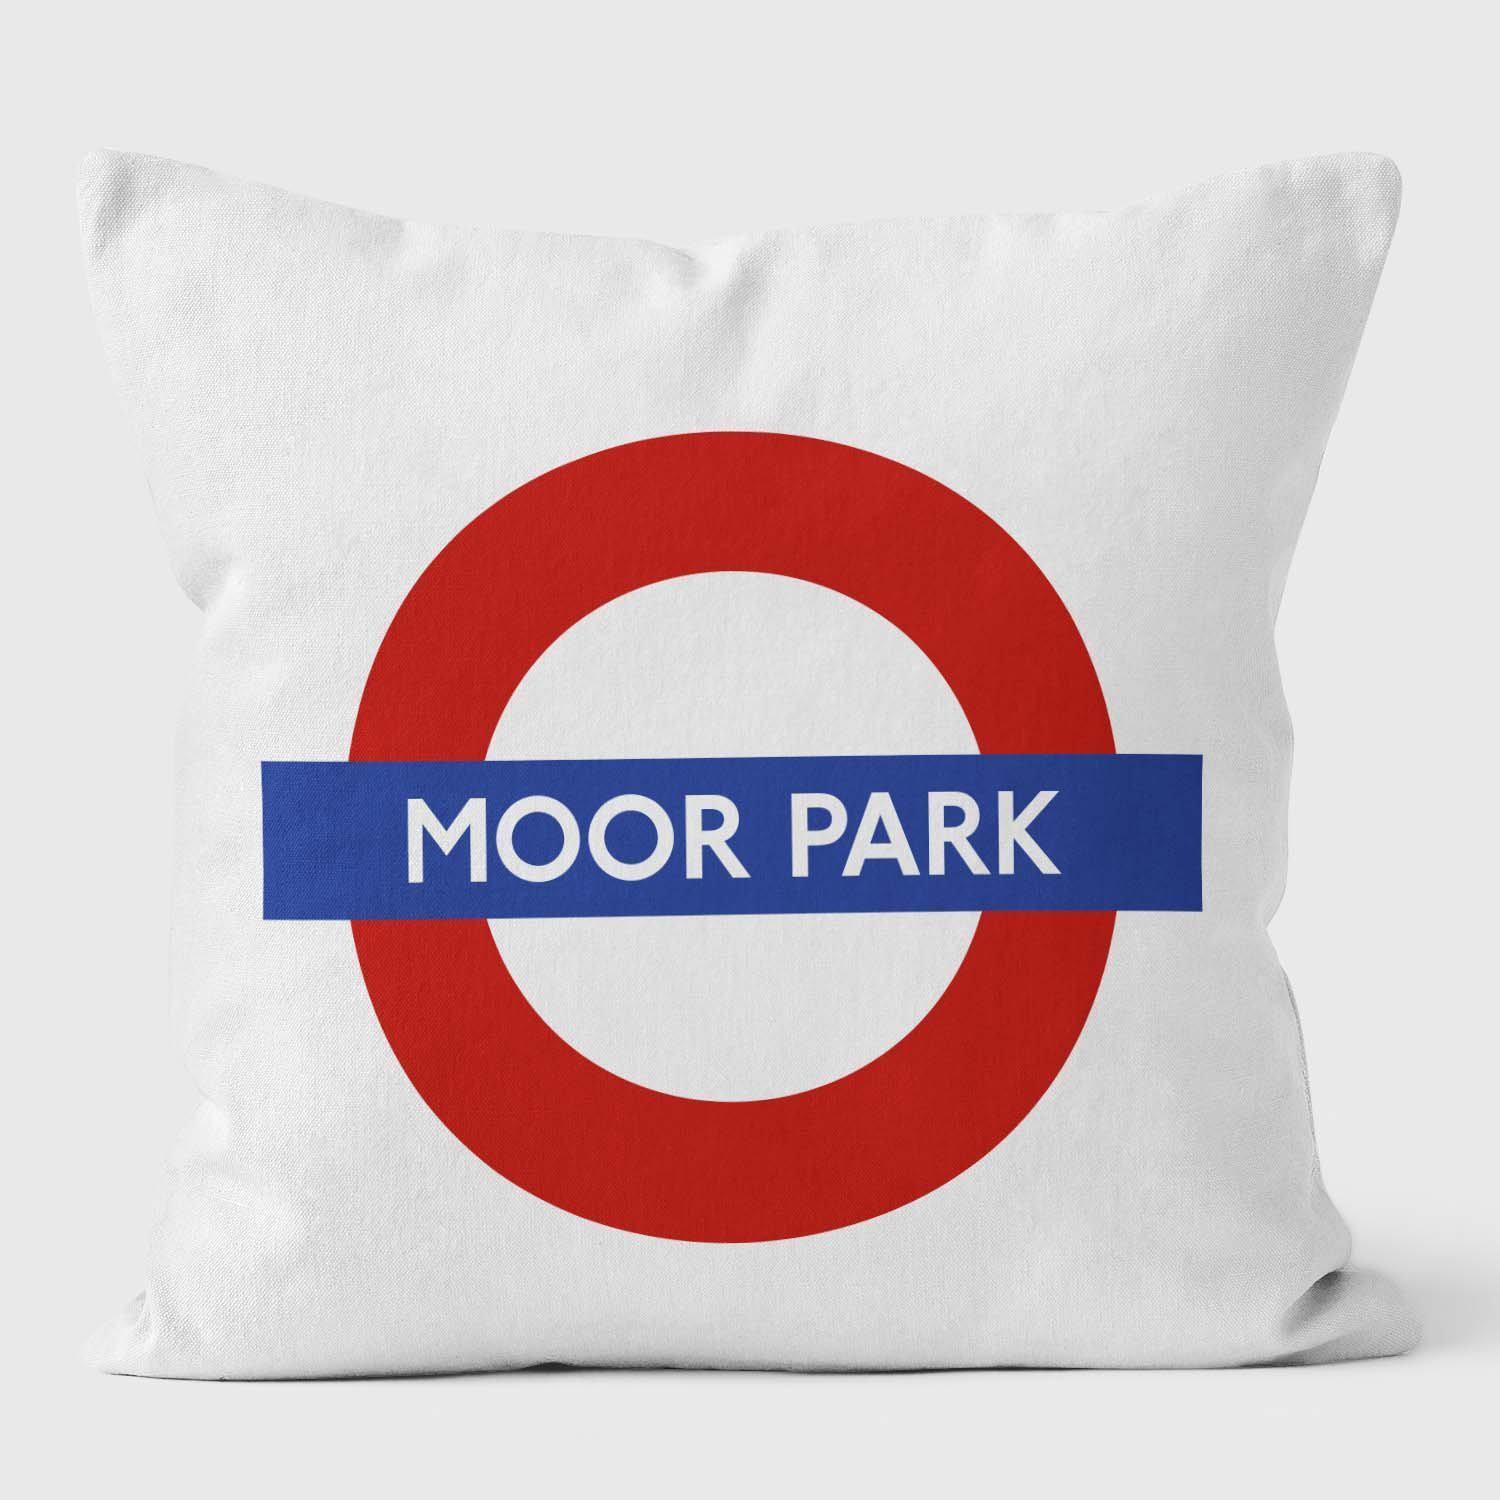 Moor Park London Underground Tube Station Roundel Cushion - Handmade Cushions UK - WeLoveCushions